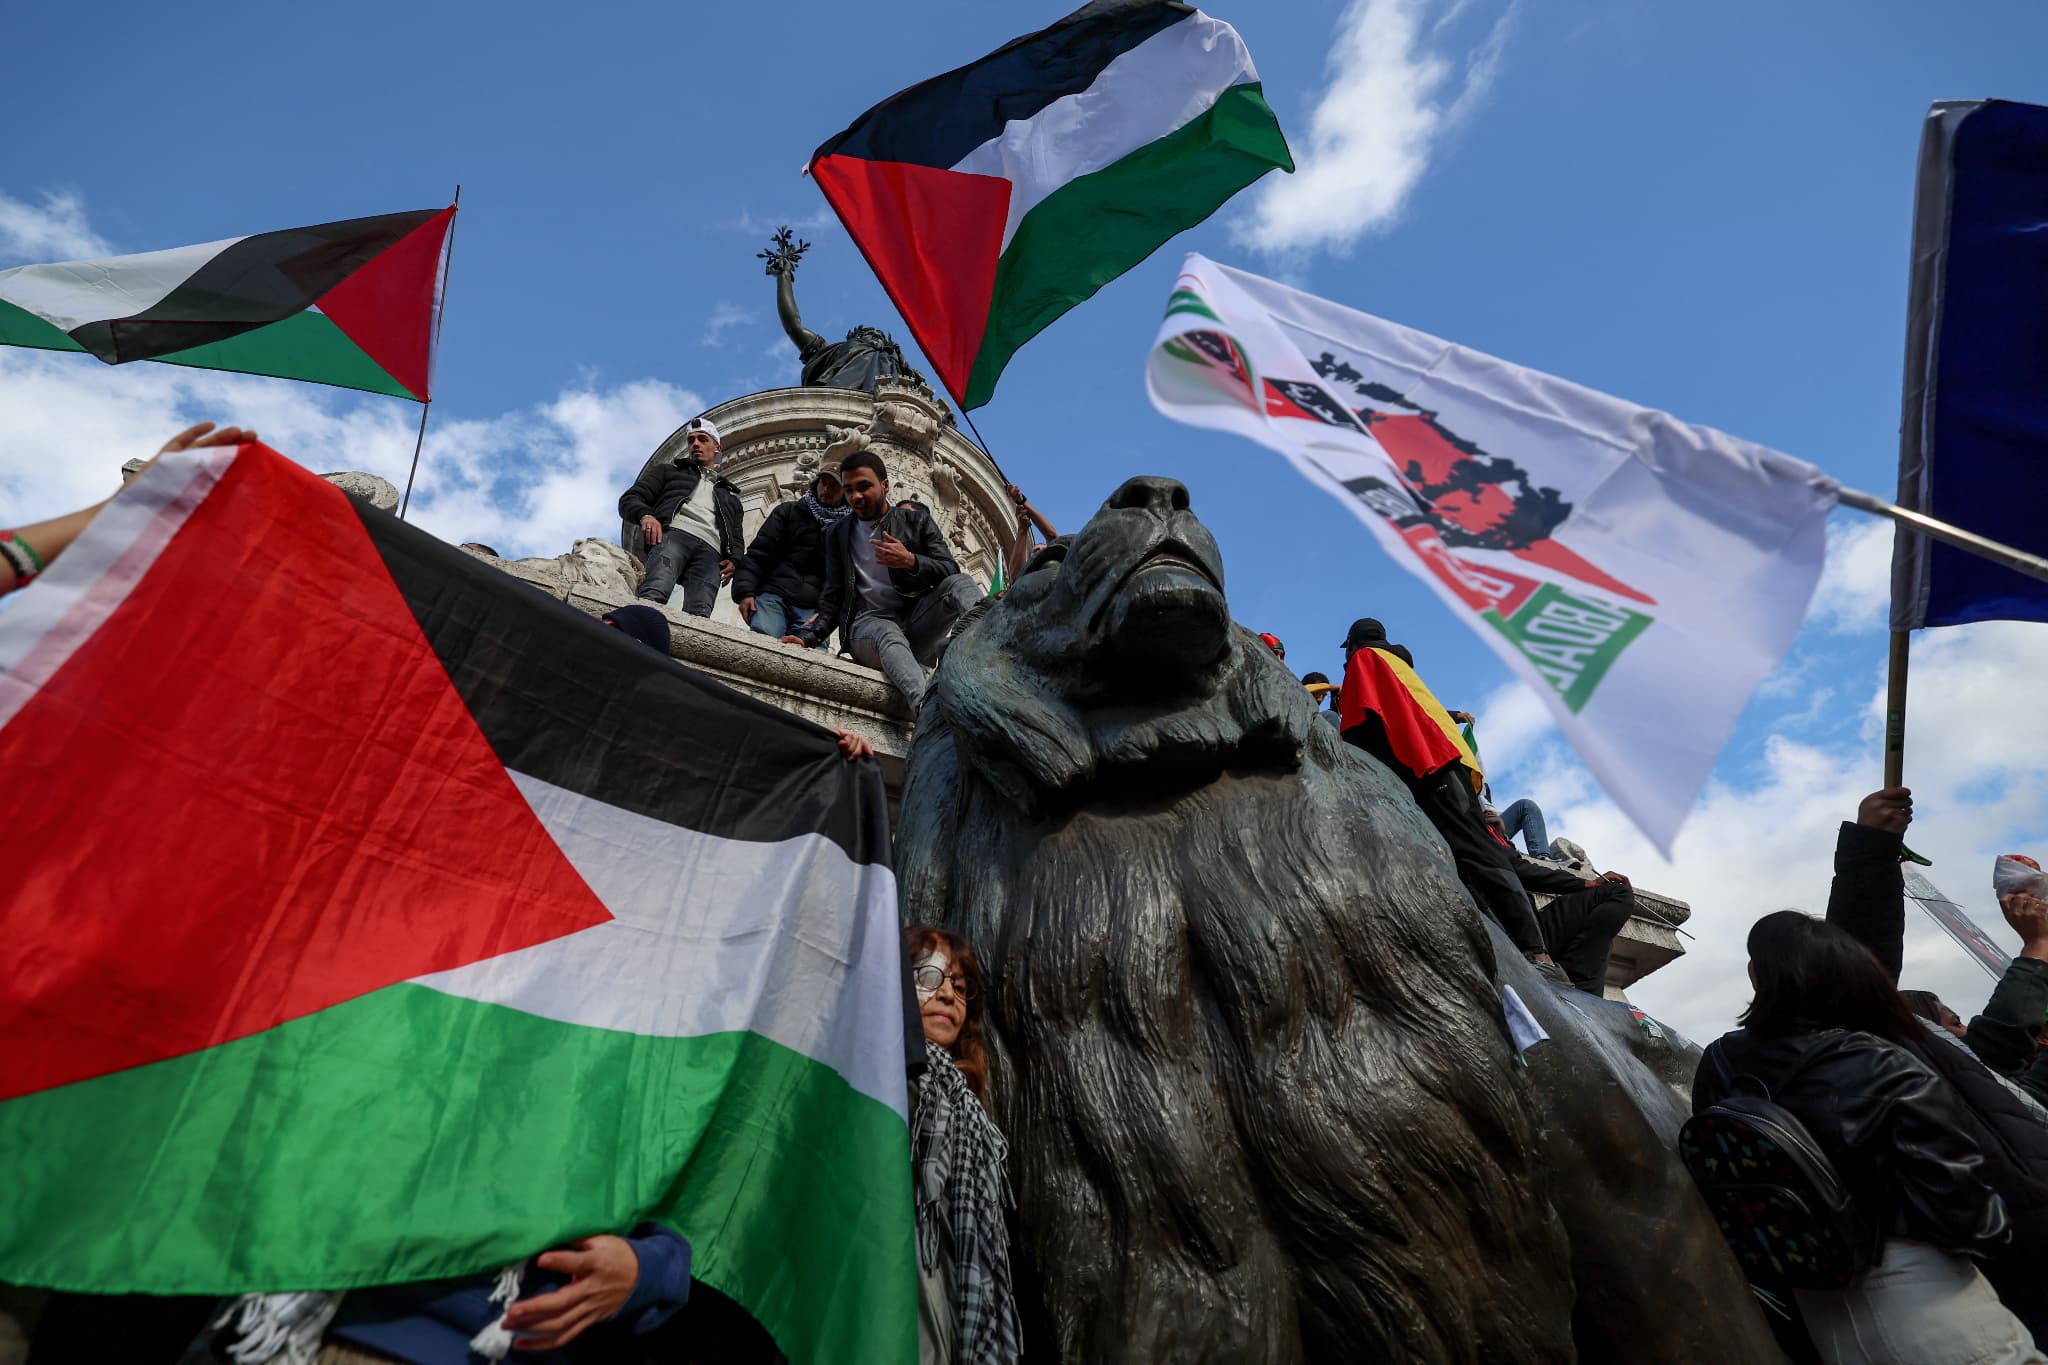 nouveaux blocages à venir? après les universités, collégiens et lycéens mobilisés pour la palestine